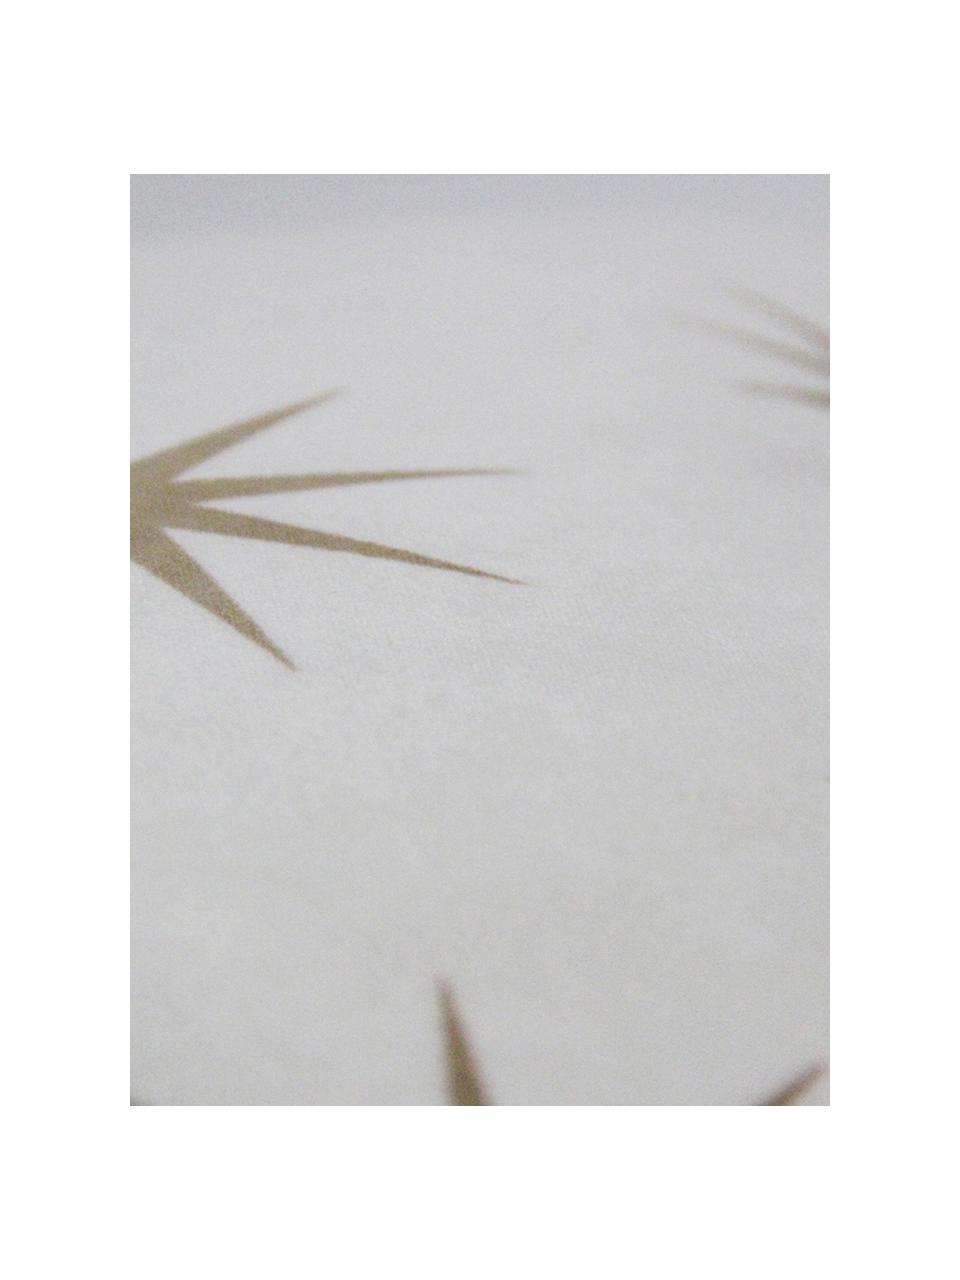 Samt-Kissenhülle Stars mit goldenem Sternen Print, Polyestersamt, Weiß, Braun, 45 x 45 cm